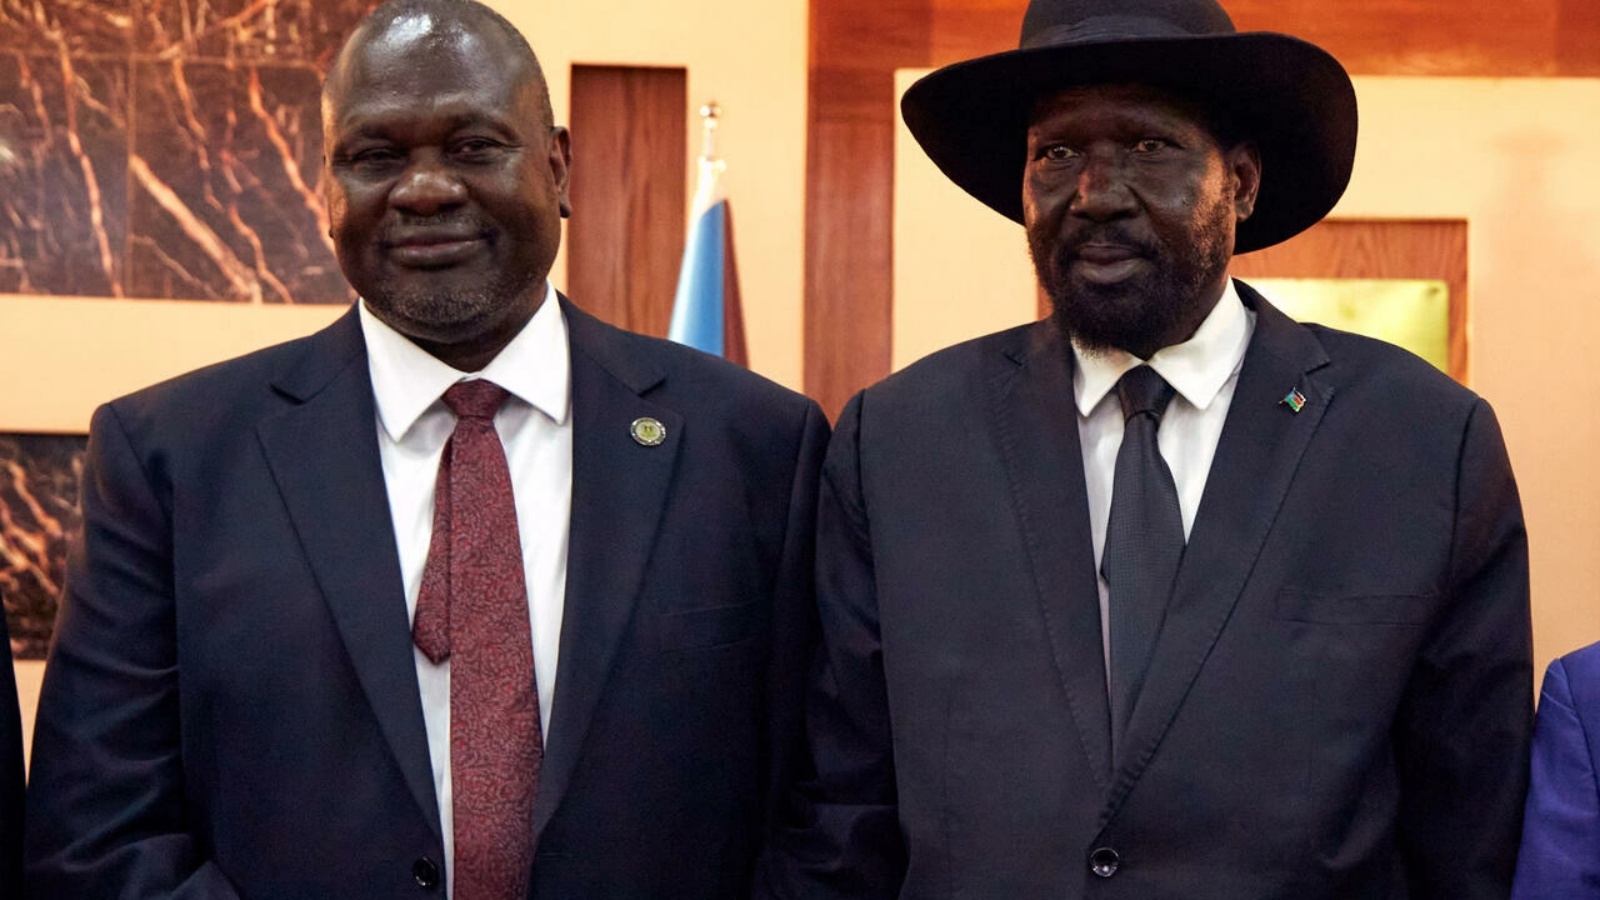 رئيس جنوب السودان سلفا كير (يمين) مع النائب الأول للرئيس رياك مشار في 22 فبراير 2020 أثناء حضورهما مراسم أداء اليمين في قصر الولاية في جوبا، جنوب السودان